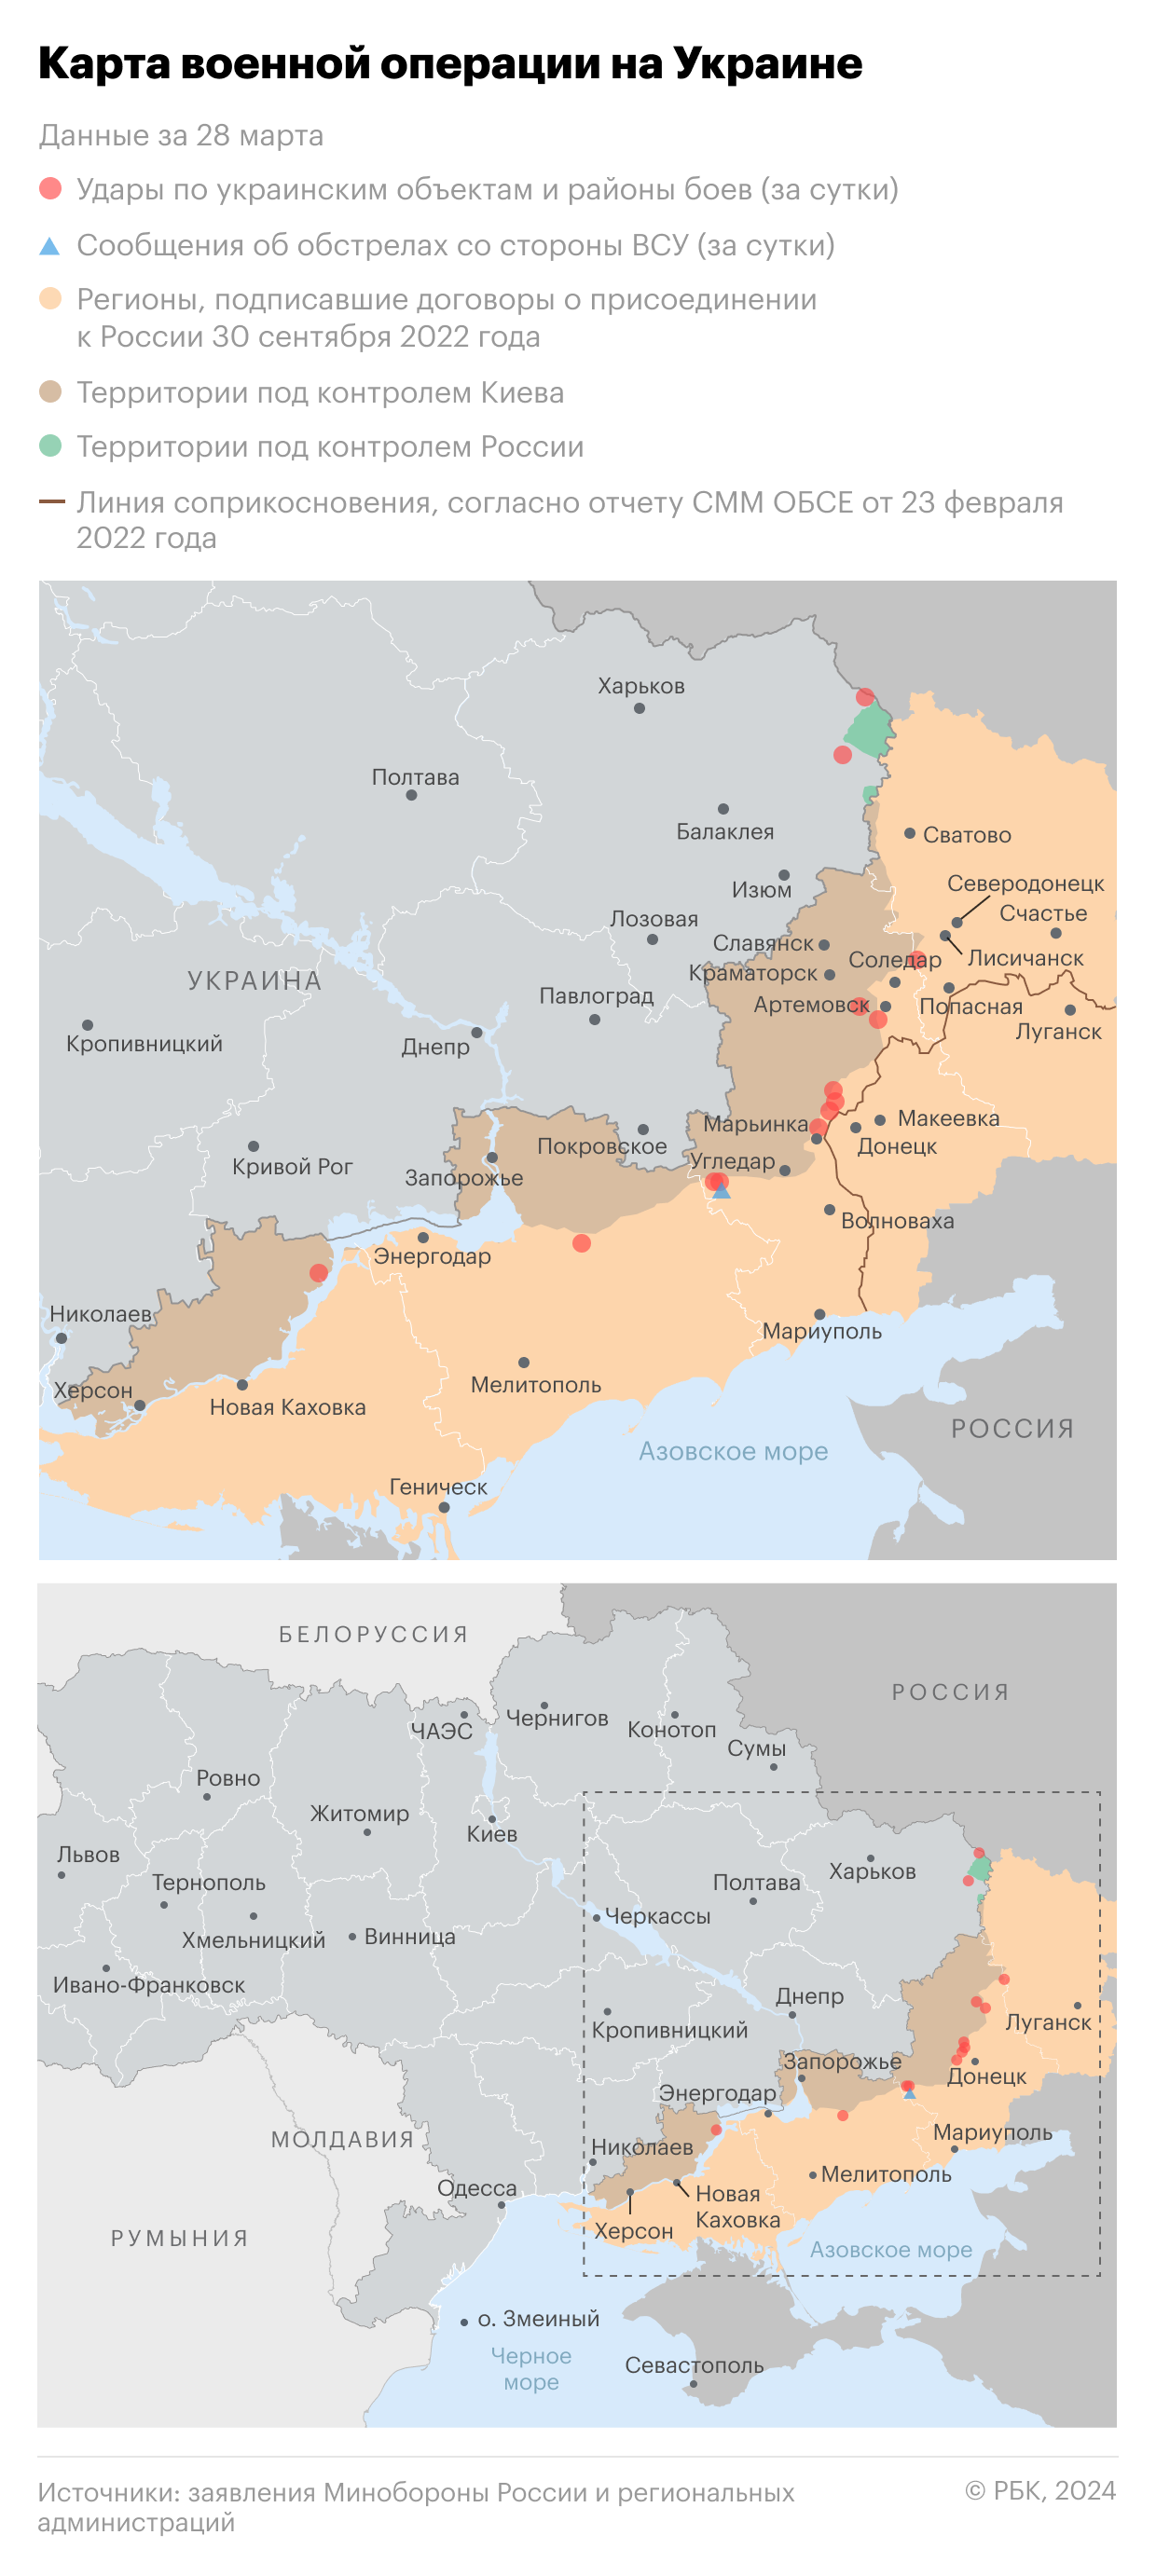 Военная операция на Украине. Карта на 26 марта